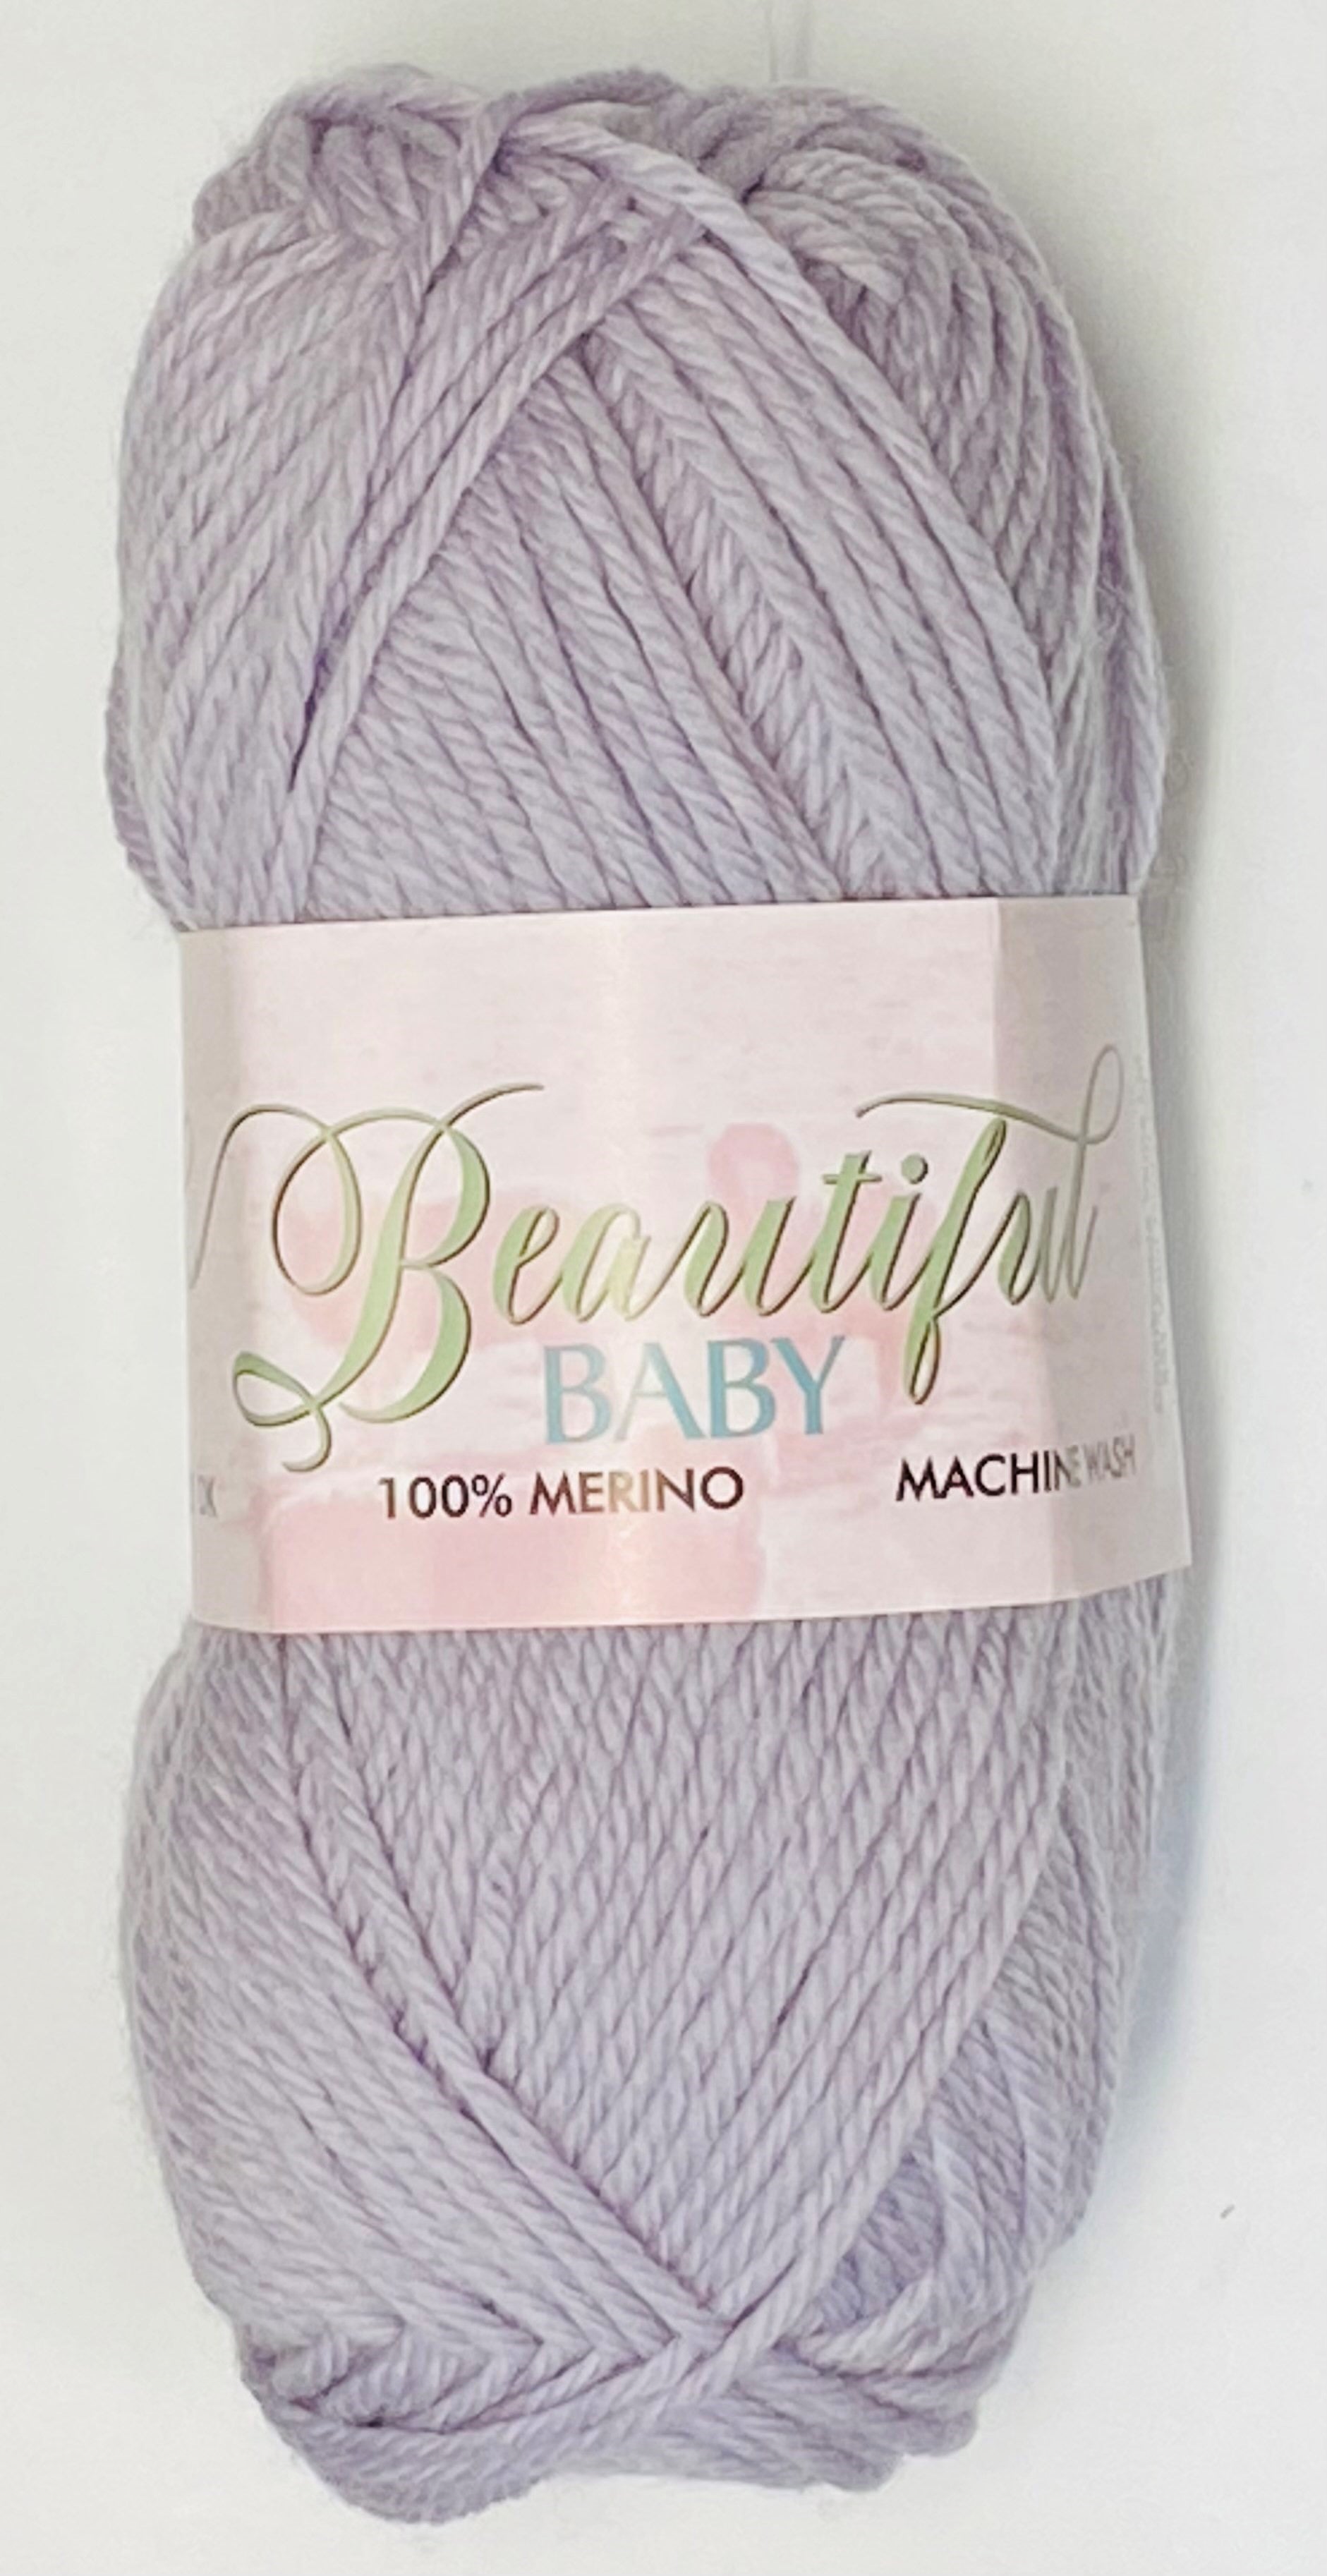 Beautiful 8 Ply Baby Merino Wool